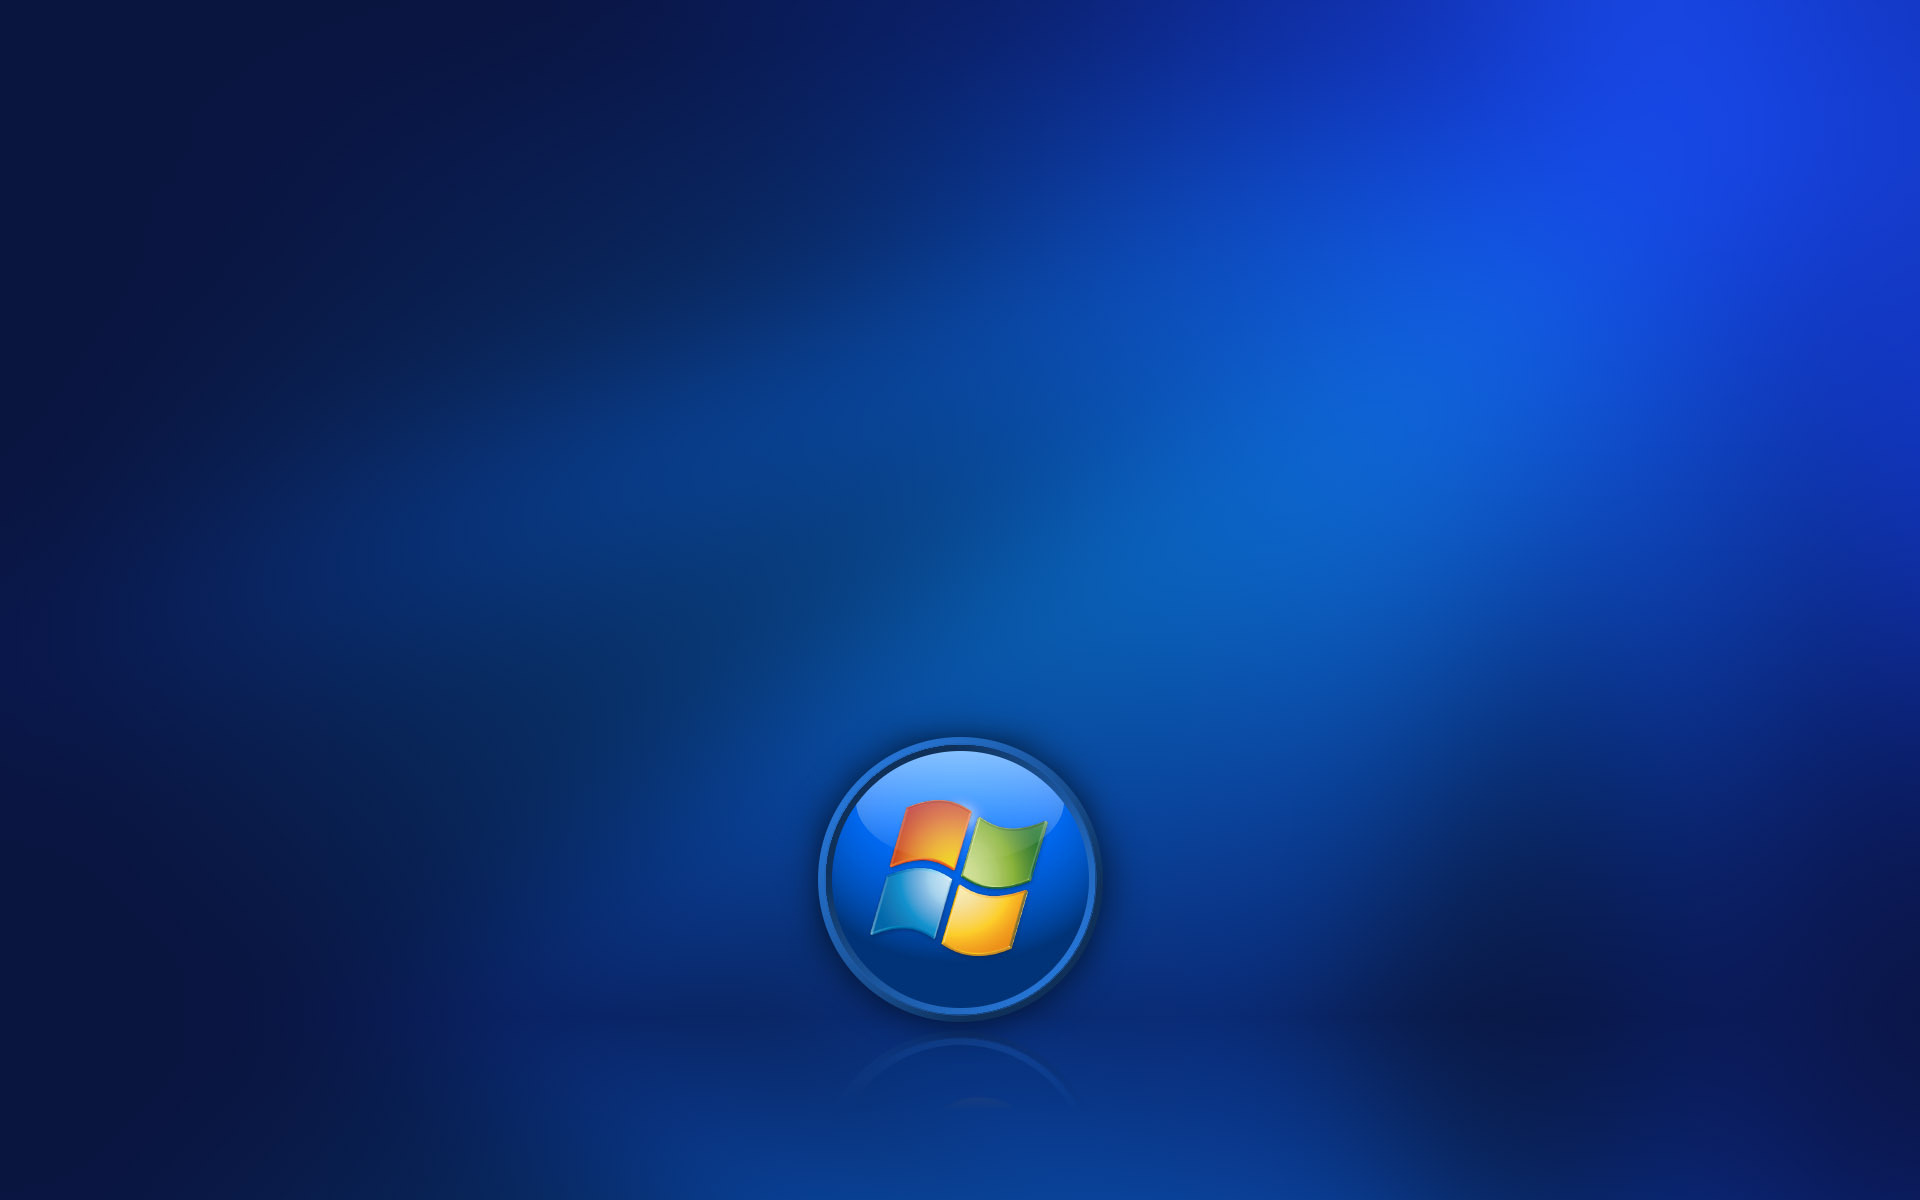 Windows 7 - Blue Wallpaper 22257341 - Fanpop